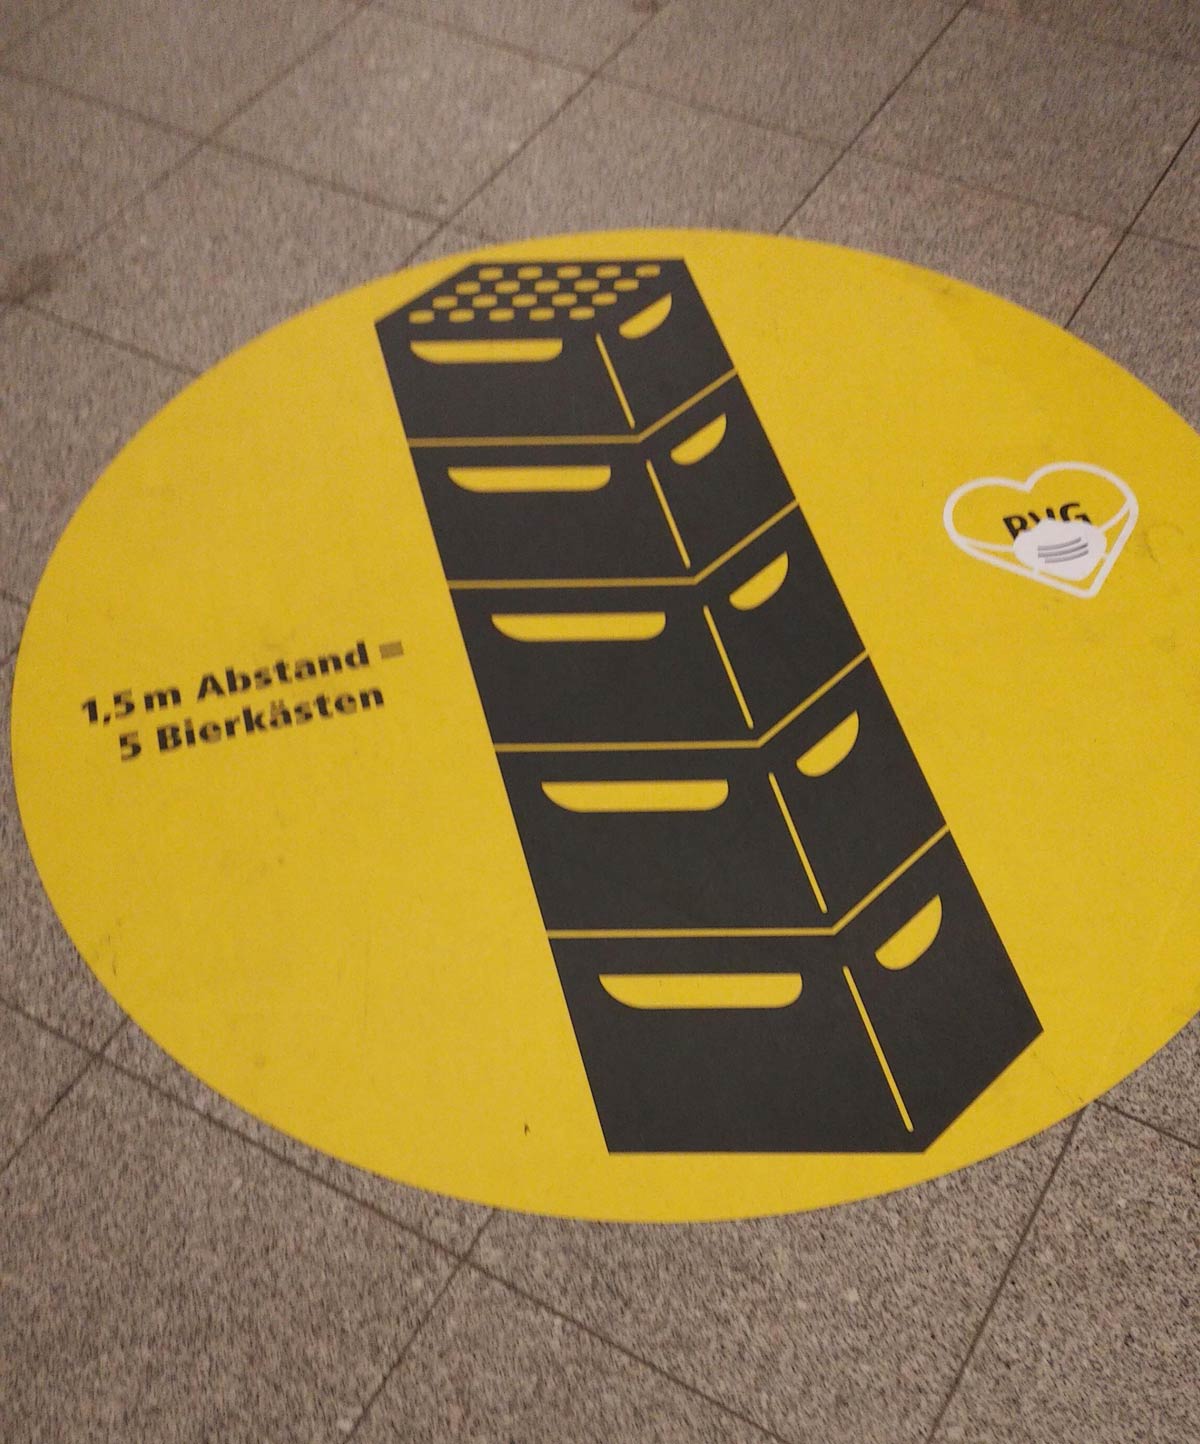 In Berlin we keep 1.5m social distance, measured in beer